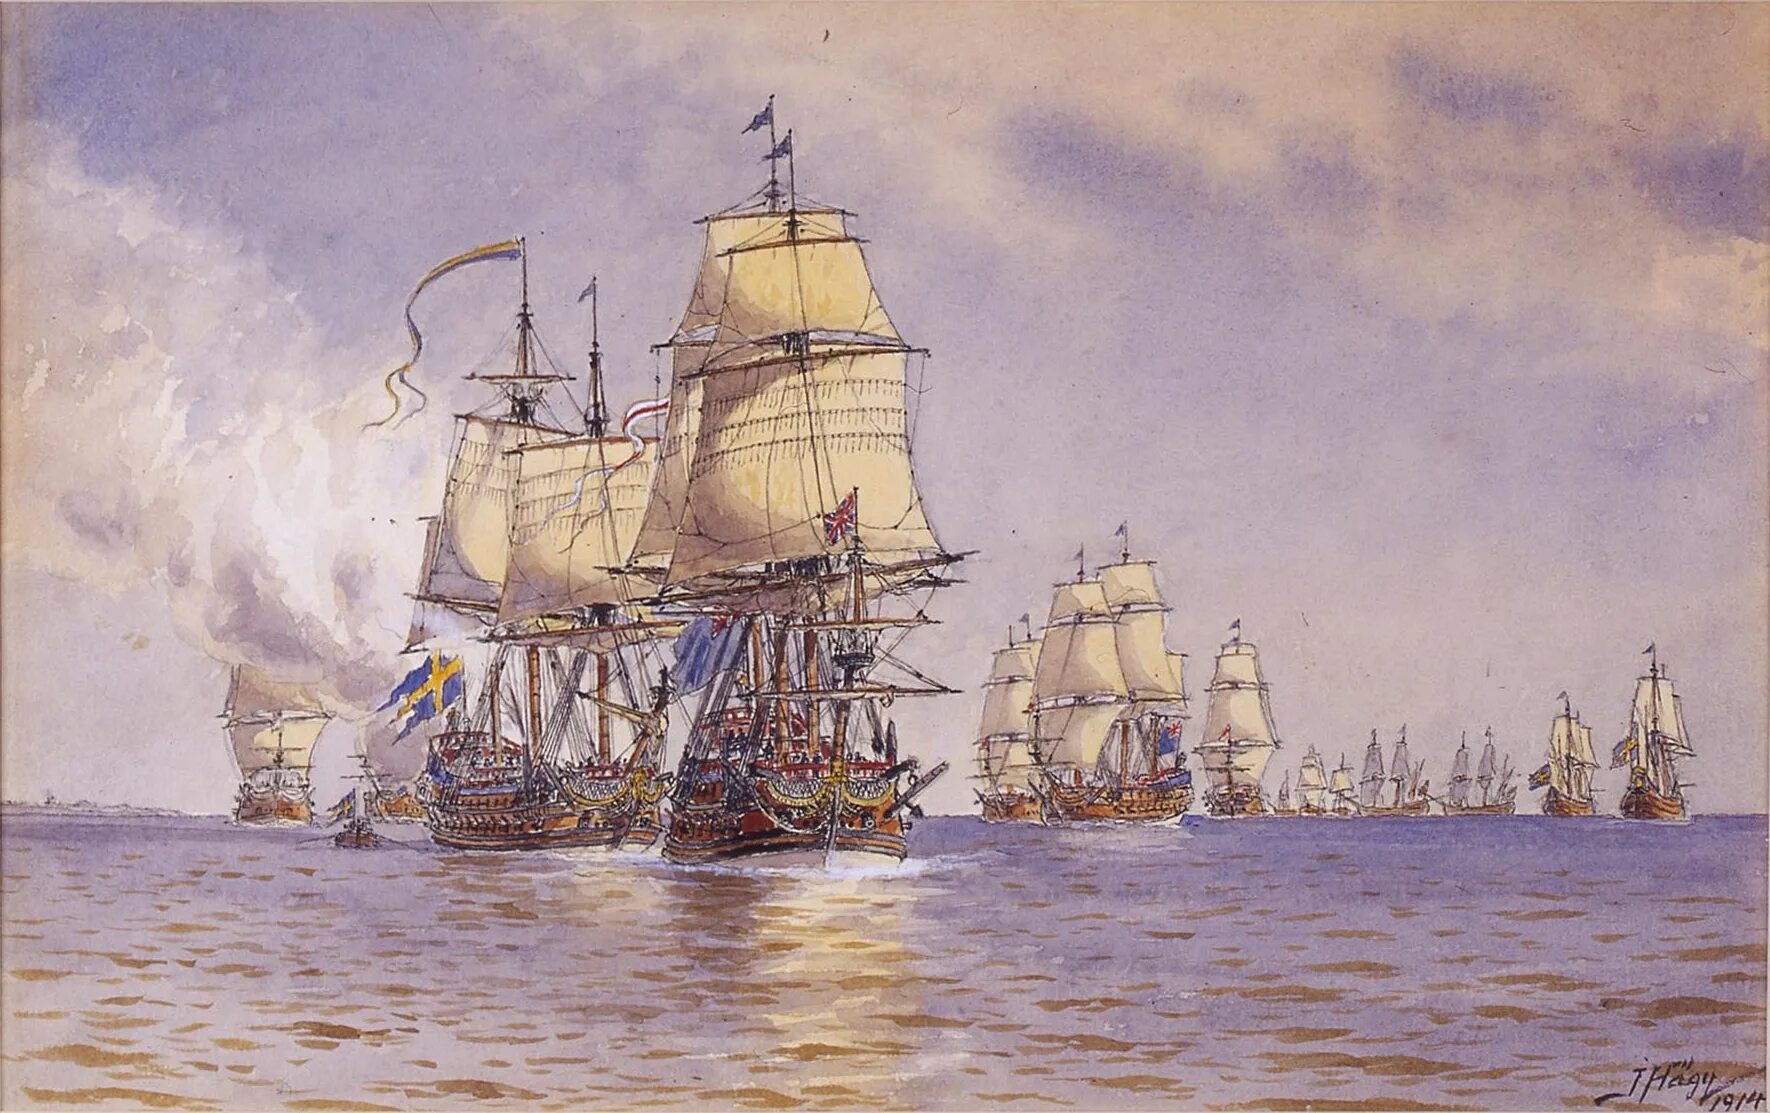 Гогландское сражение 1788. Бой у острова Эзель 24 мая 1719 года. Парусный линейный корабль Кайзер 1858. Якоб Хагг. Шведская эскадра